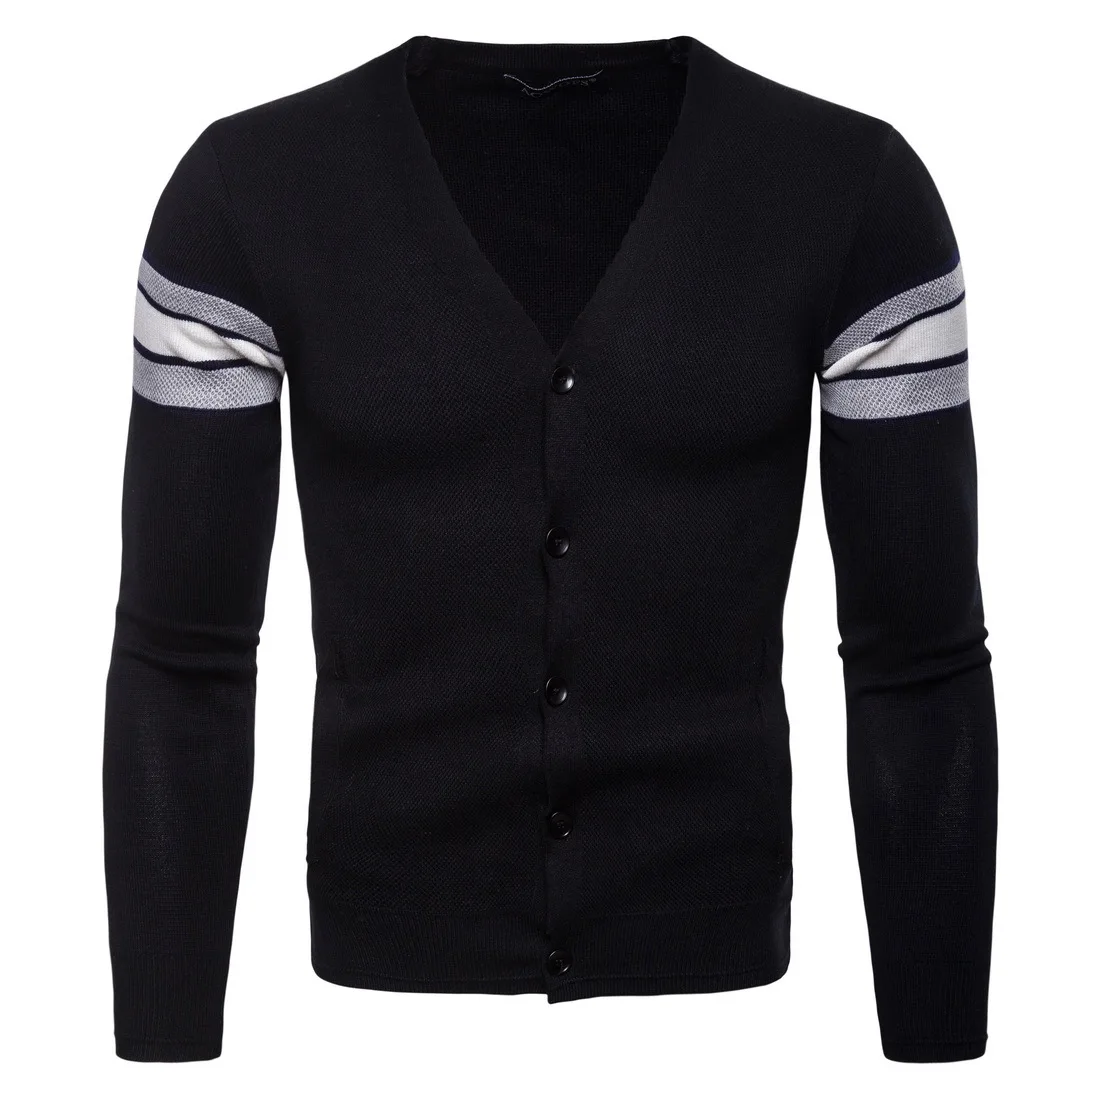 Фото 2018 Для мужчин свитер черные осенние вязаный кардиган блузки V воротник M-XXL |